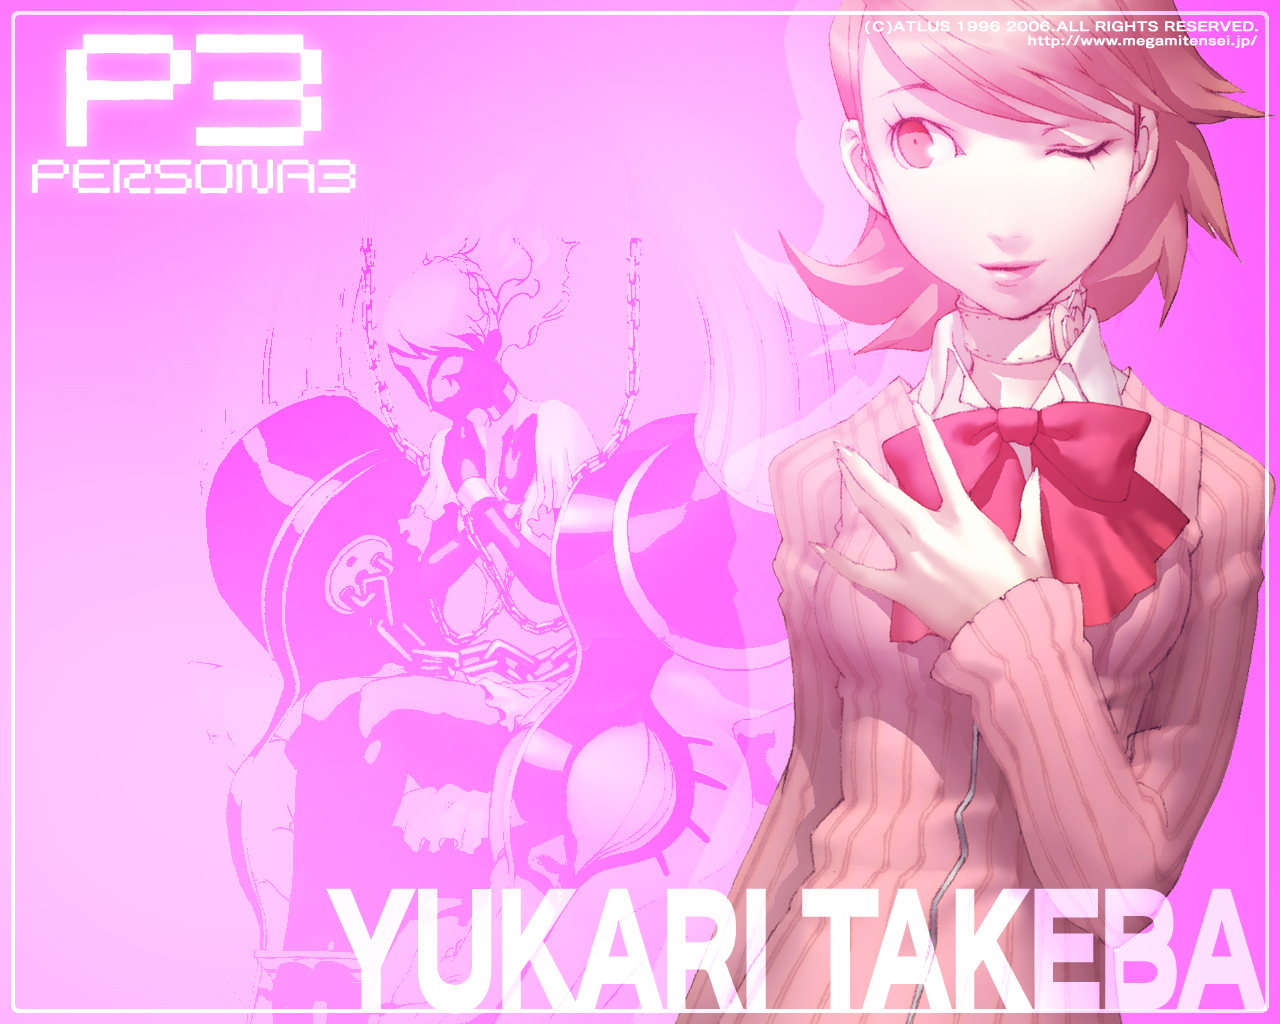 Best Yukari Takeba Desktop Images